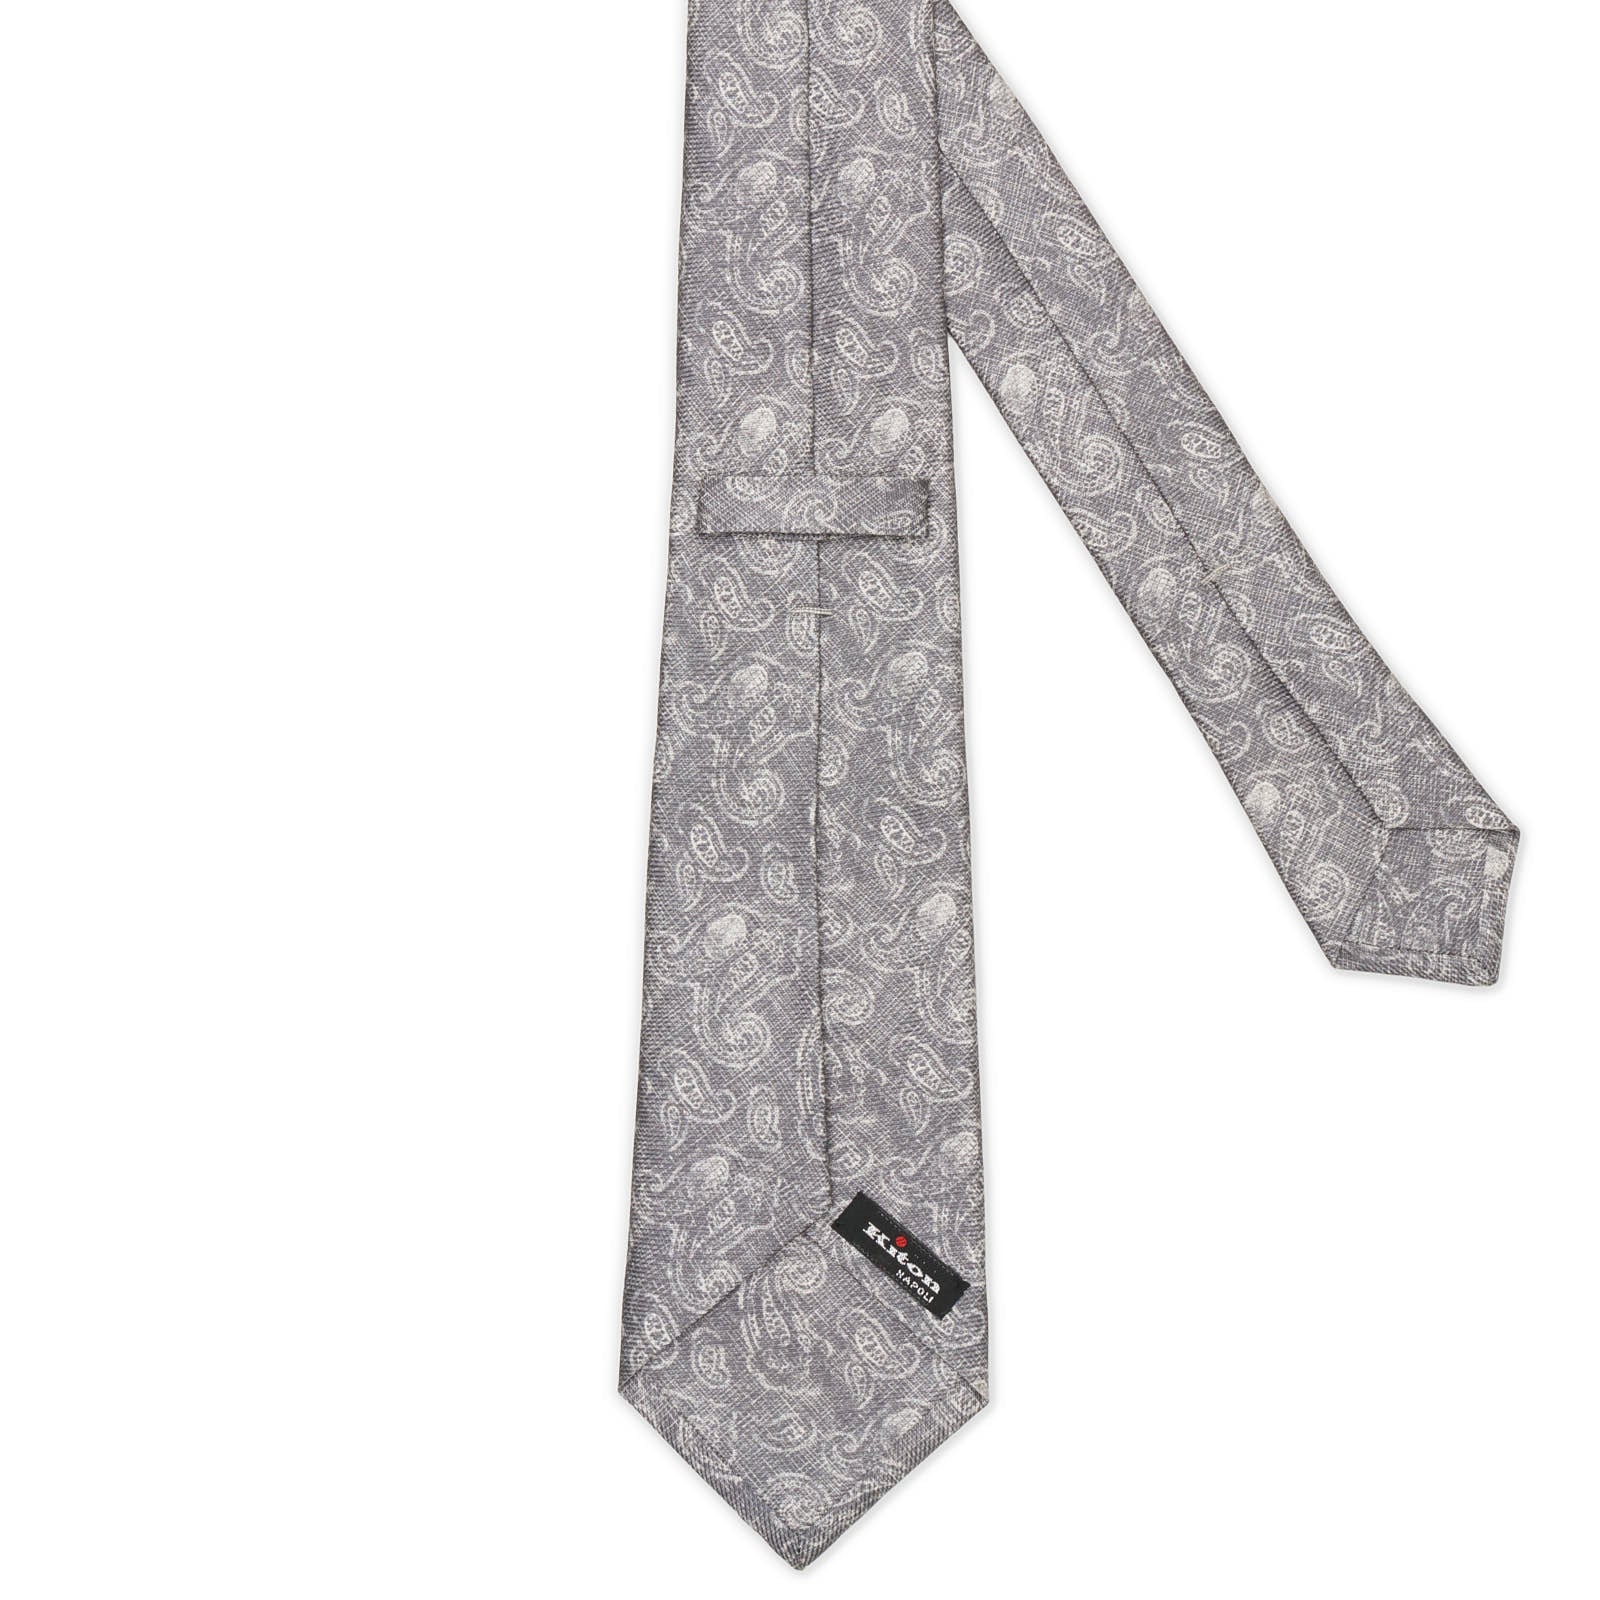 KITON Gray-White Paisely Seven Fold Silk Tie NEW